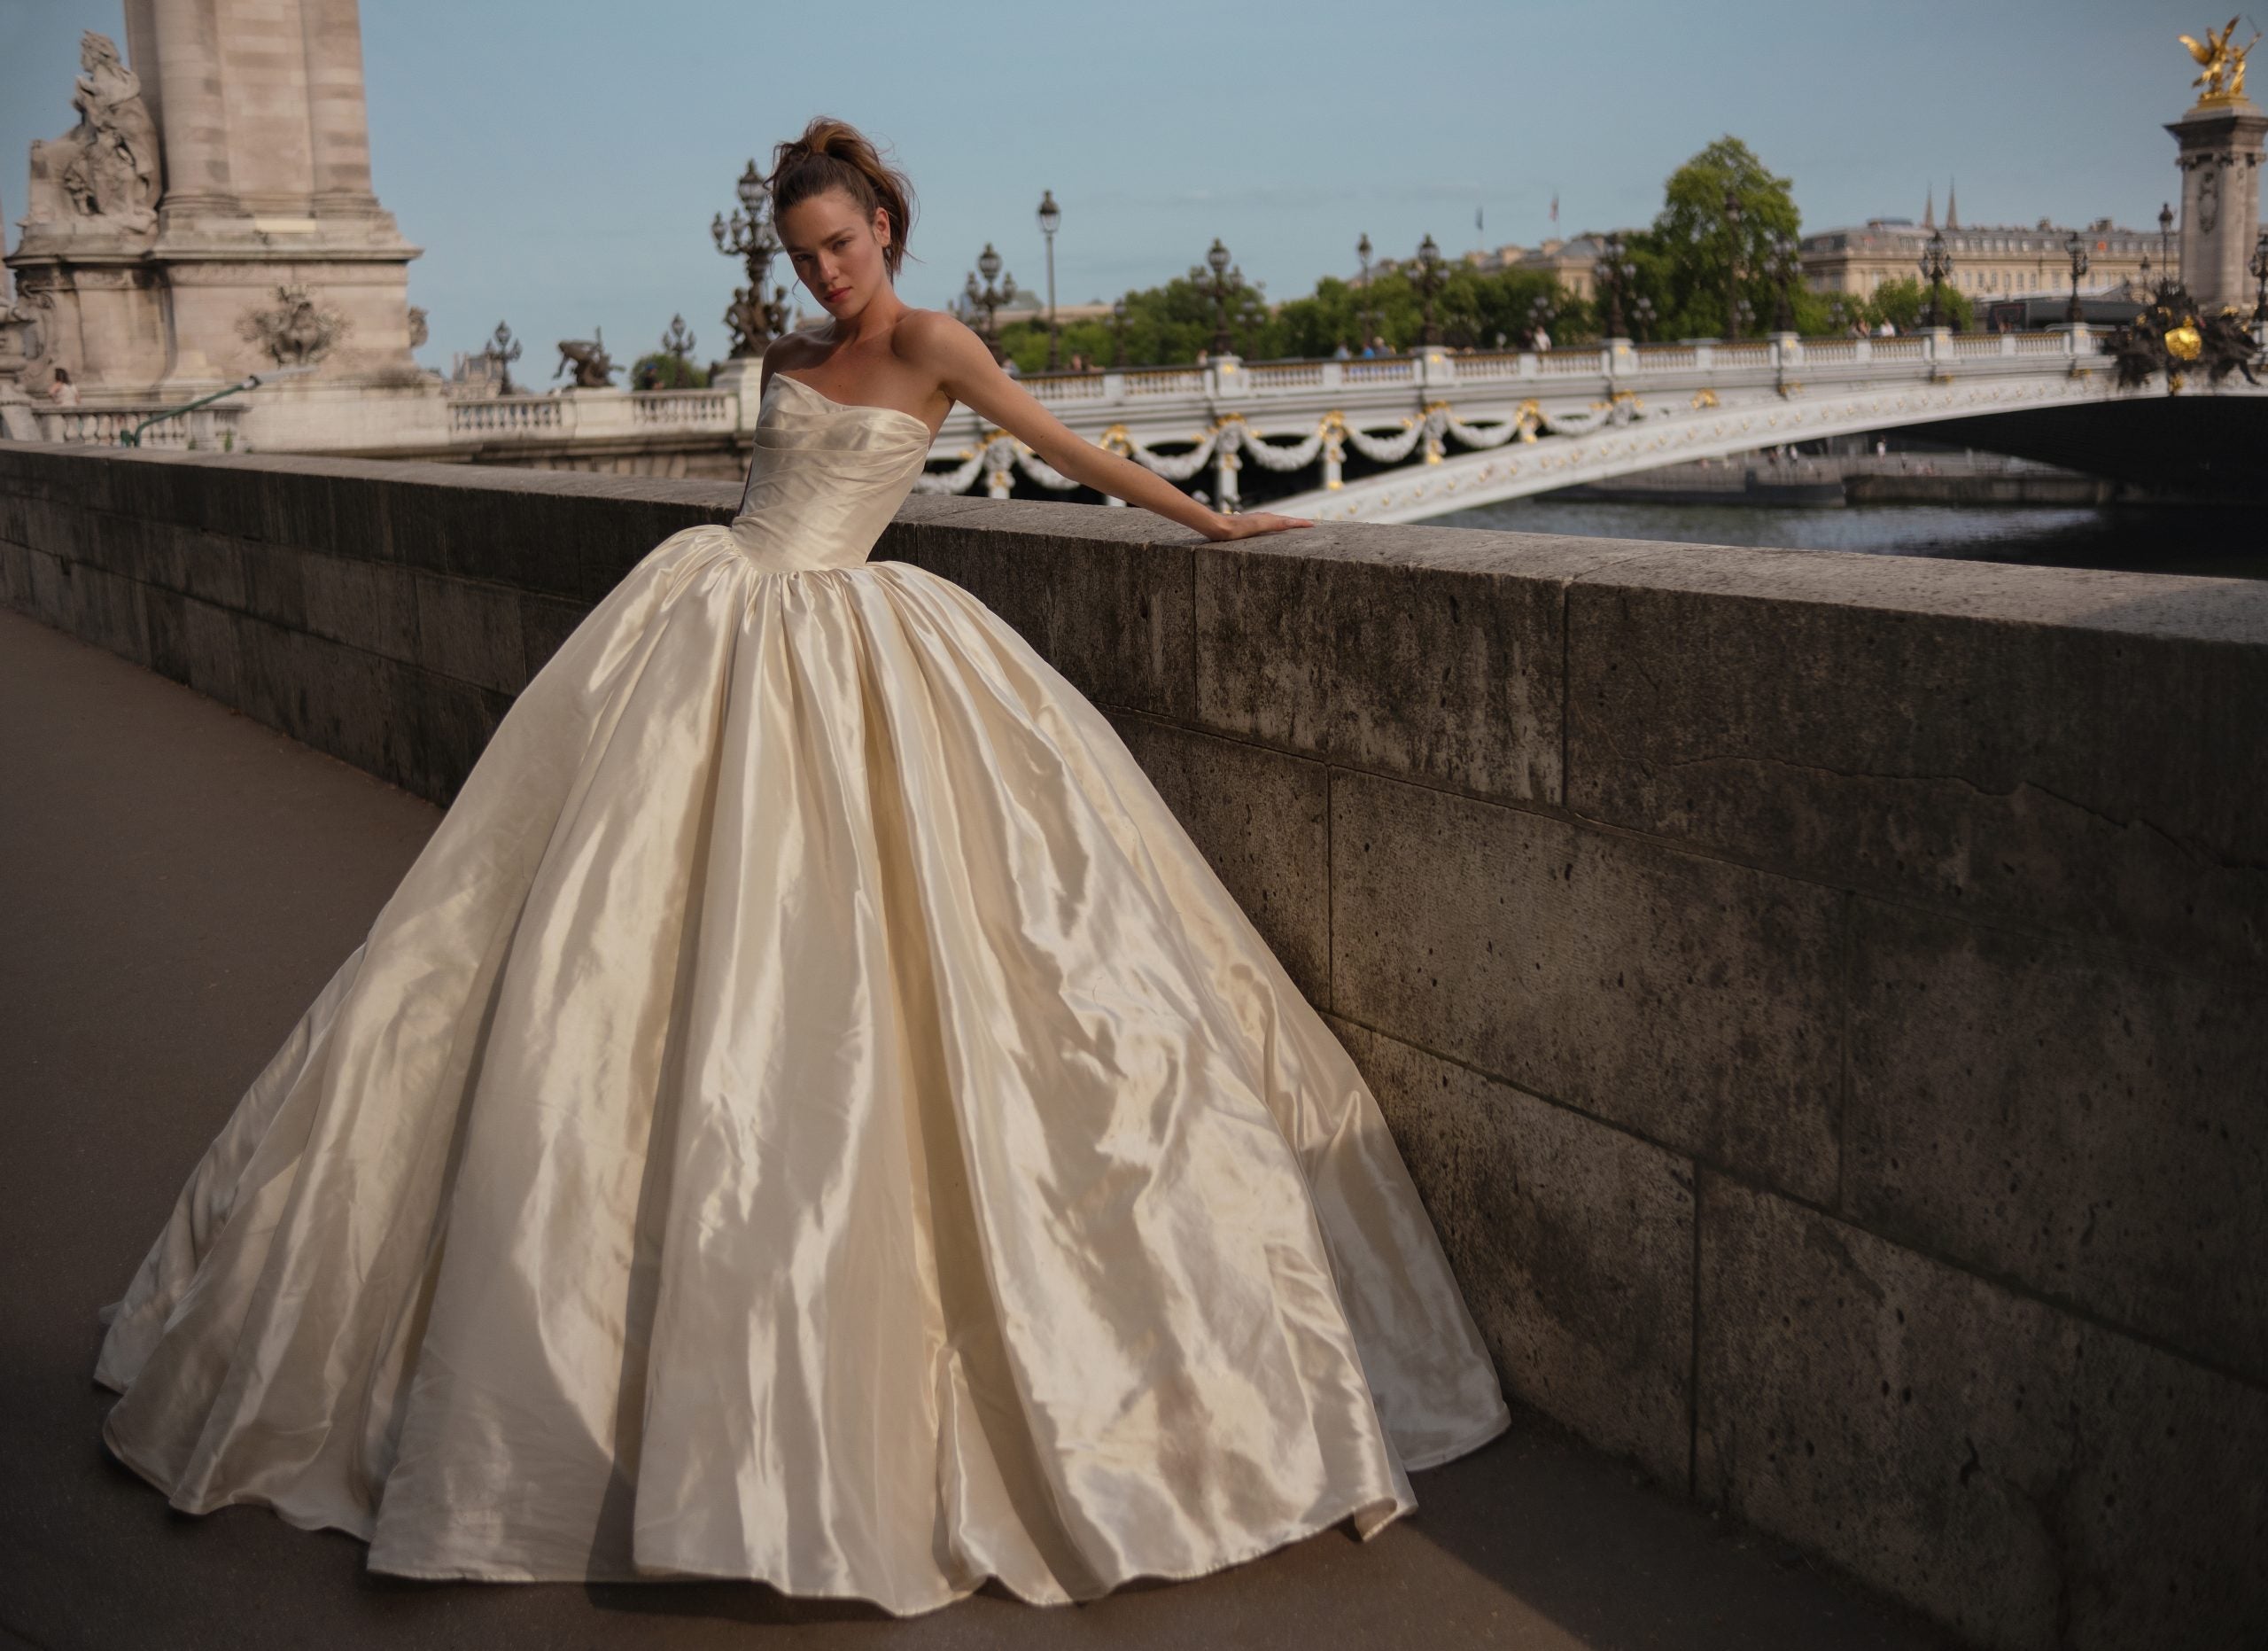 Empire Waist Sweeheart Chiffon Beach Wedding Dress | Destination wedding  dress, Bridal dresses lace, Online wedding dress